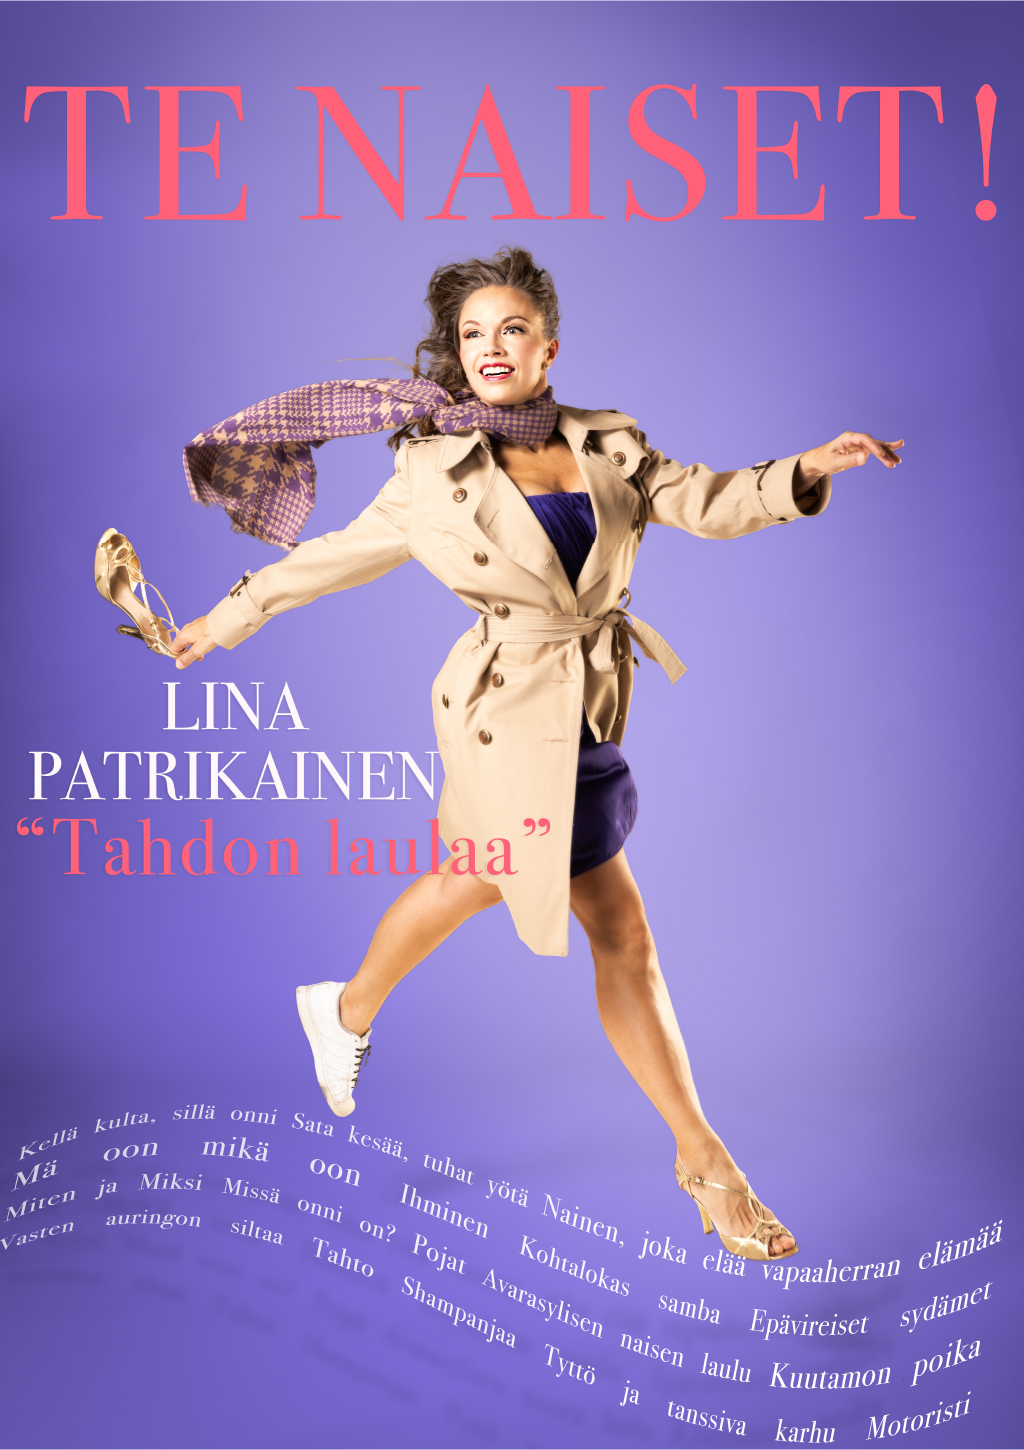 Lina Patrikainen